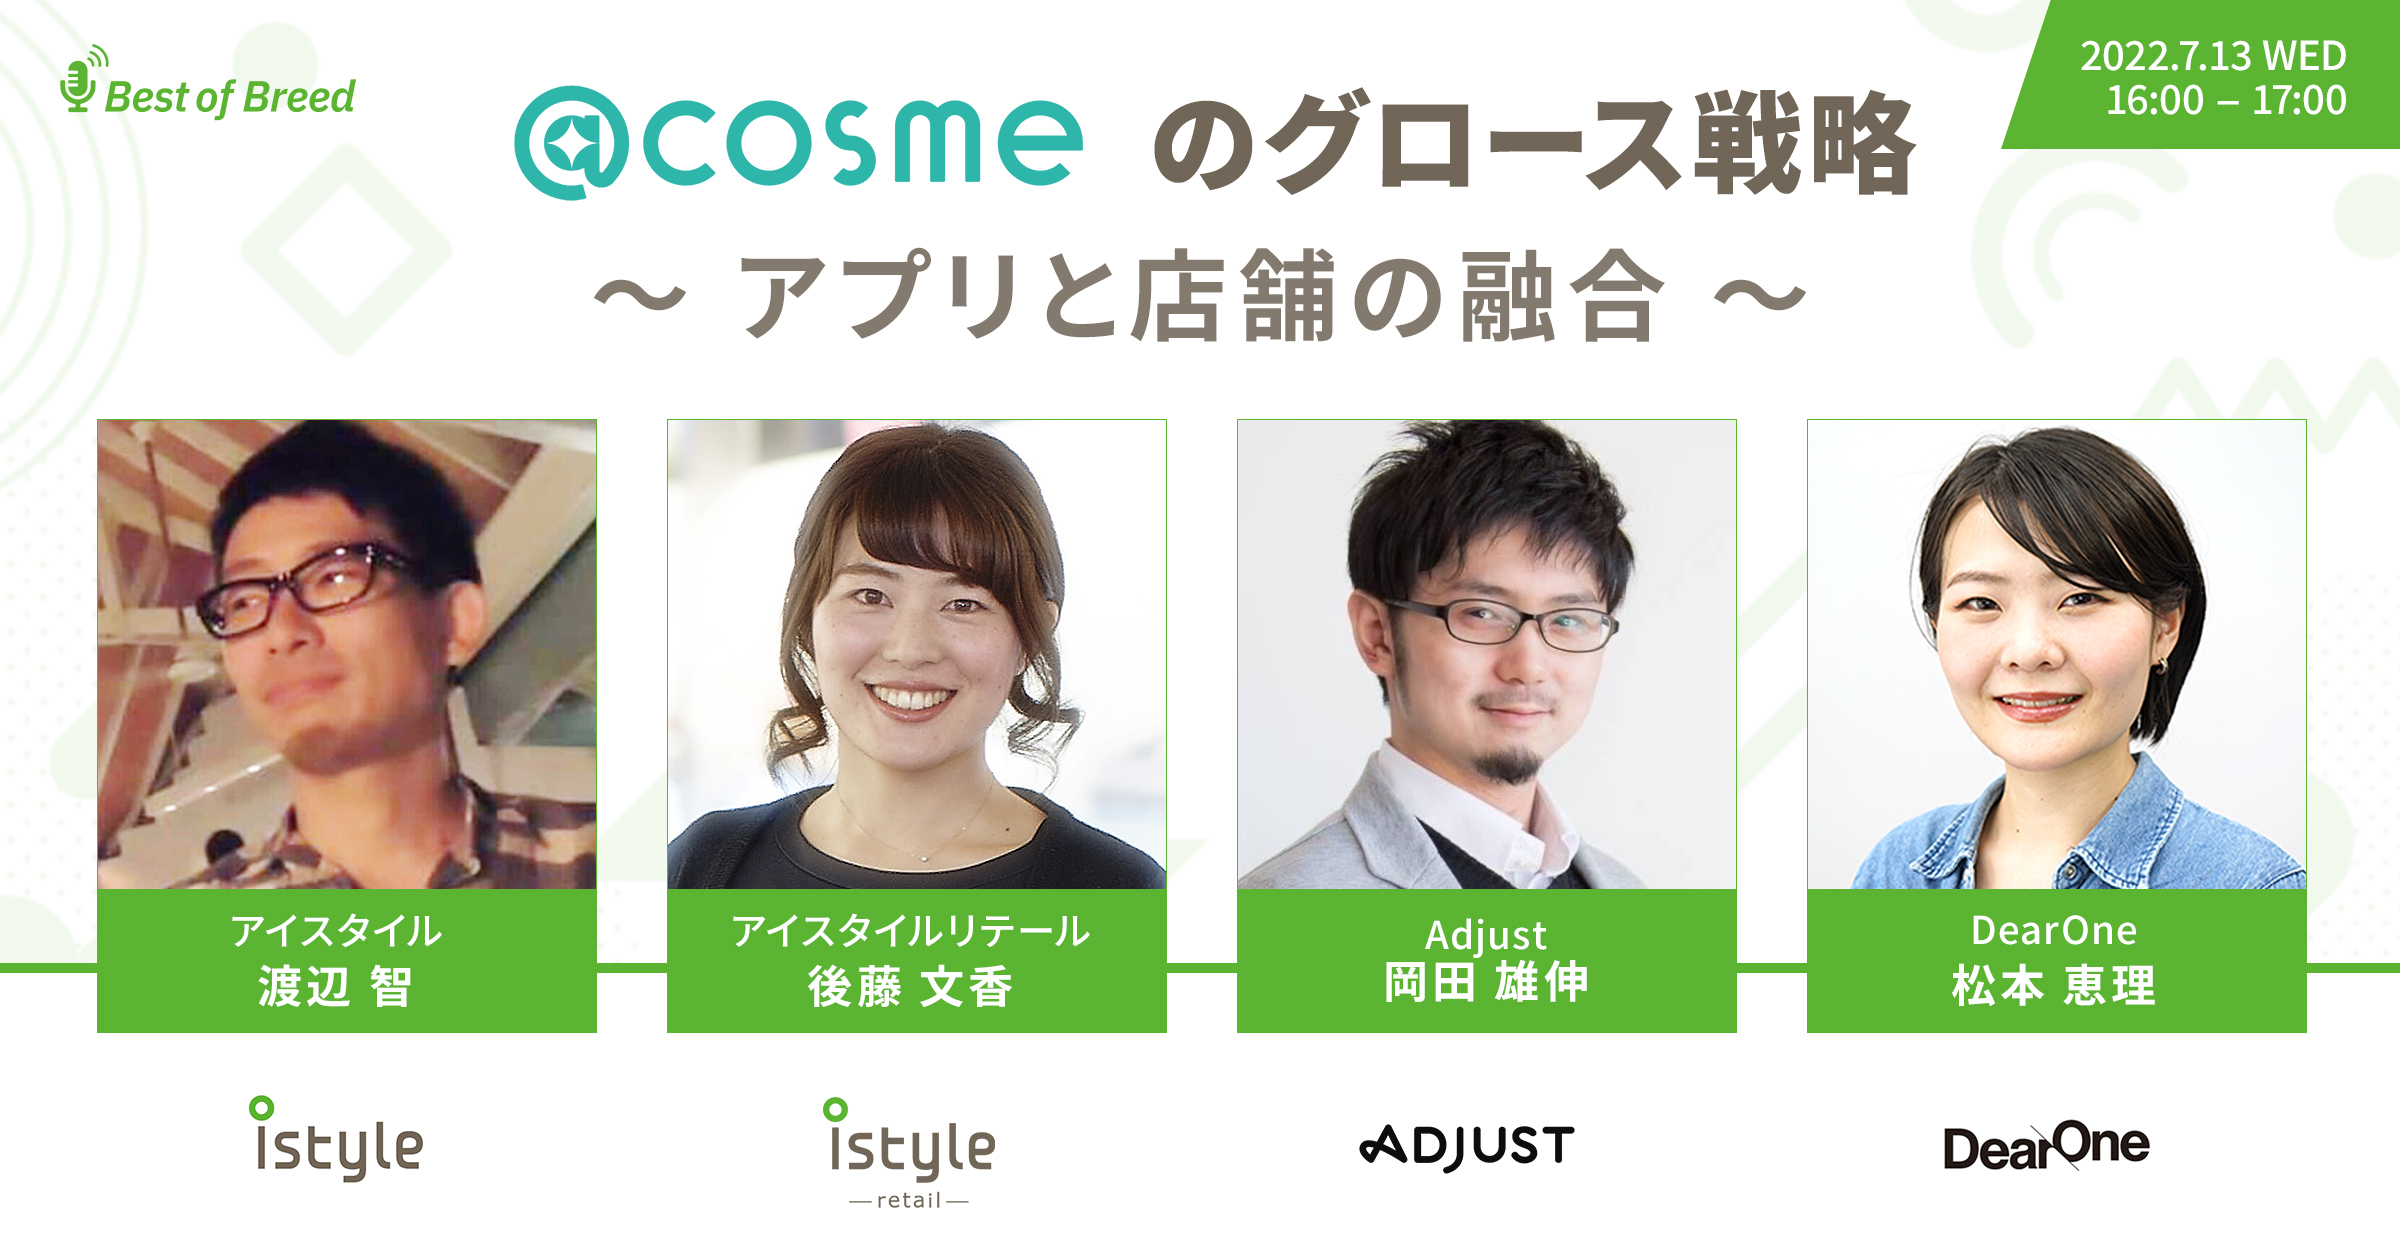 【ウェビナー動画】@cosme のグロース戦略　〜アプリと店舗の融合〜